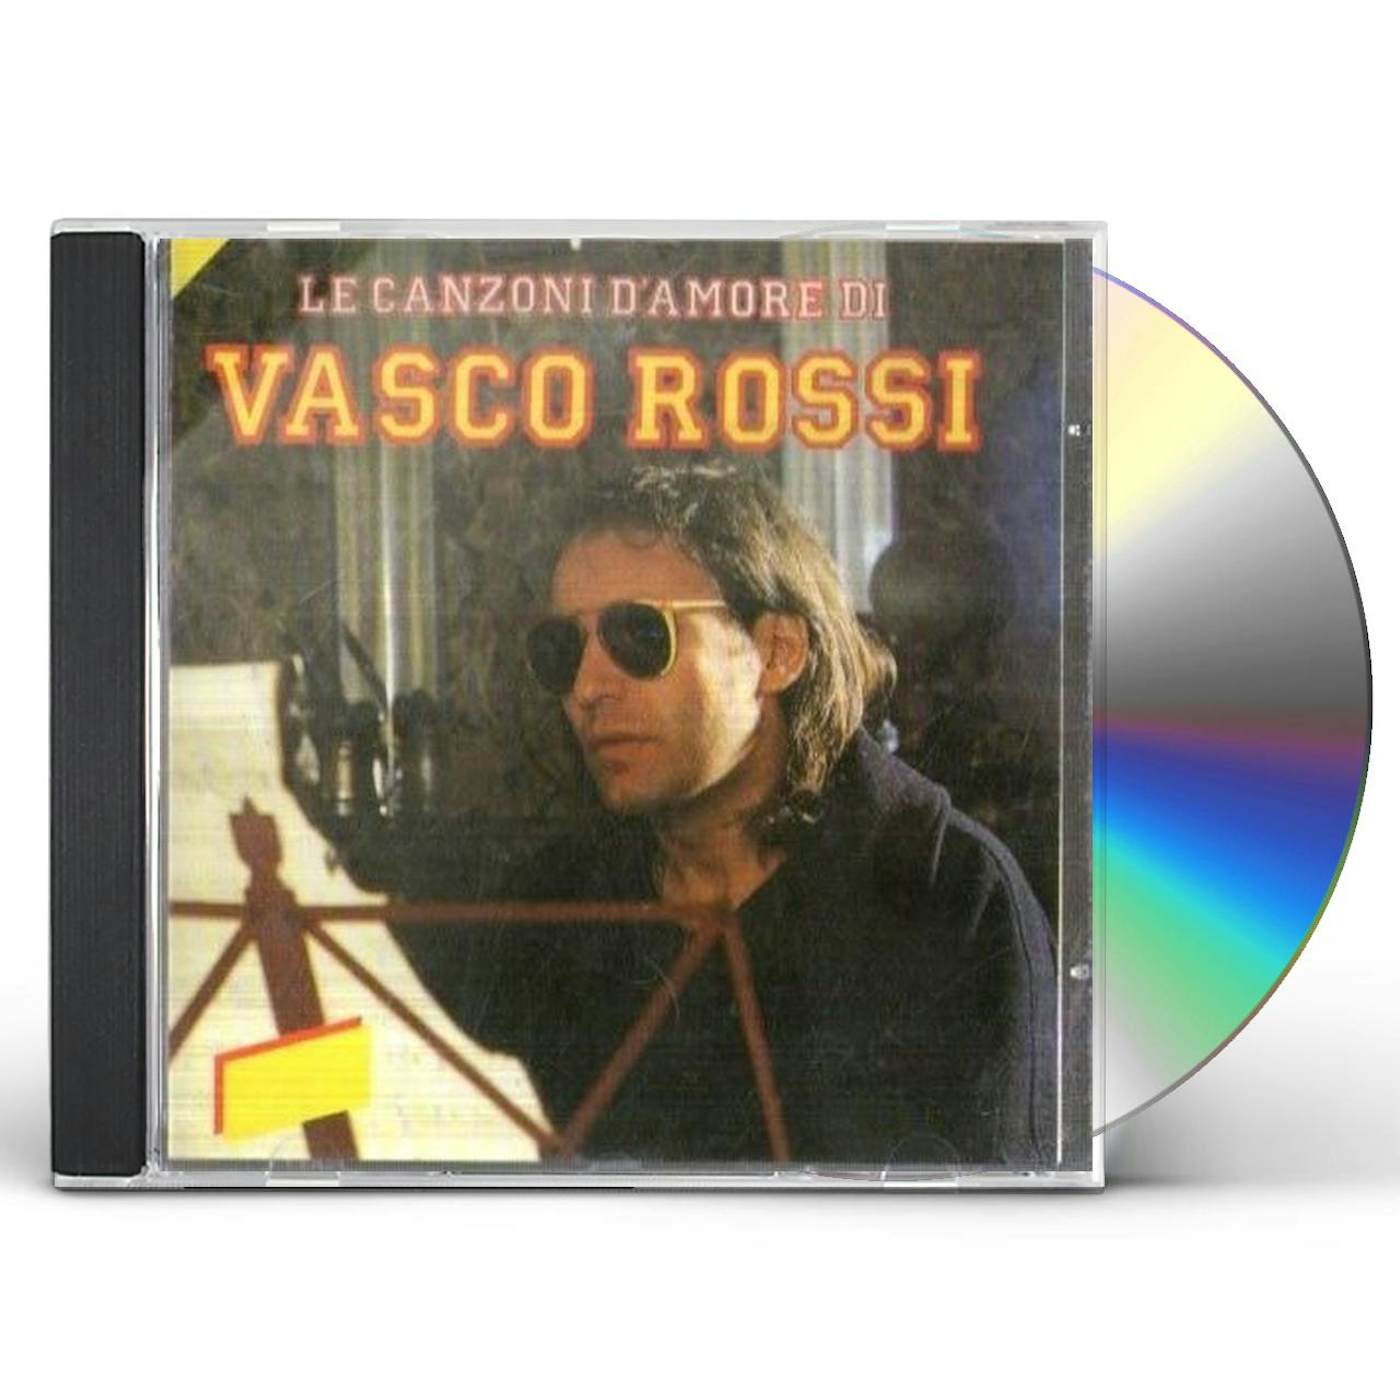 2CD Vinili IL SUPERVISSUTO di Vasco Rossi